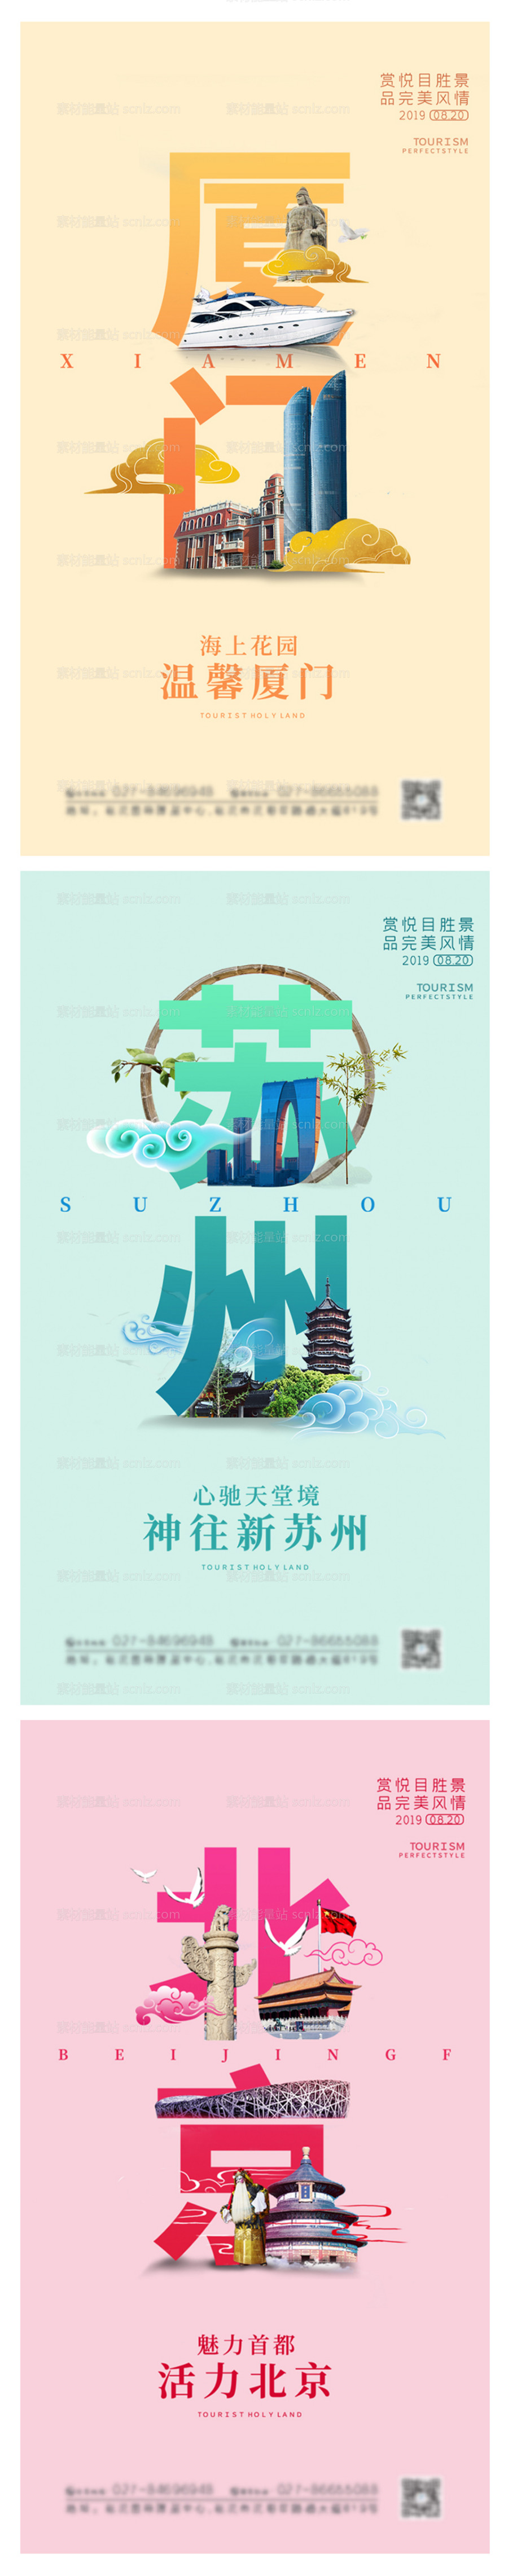 素材能量站-厦门苏州北京旅游景点系列海报